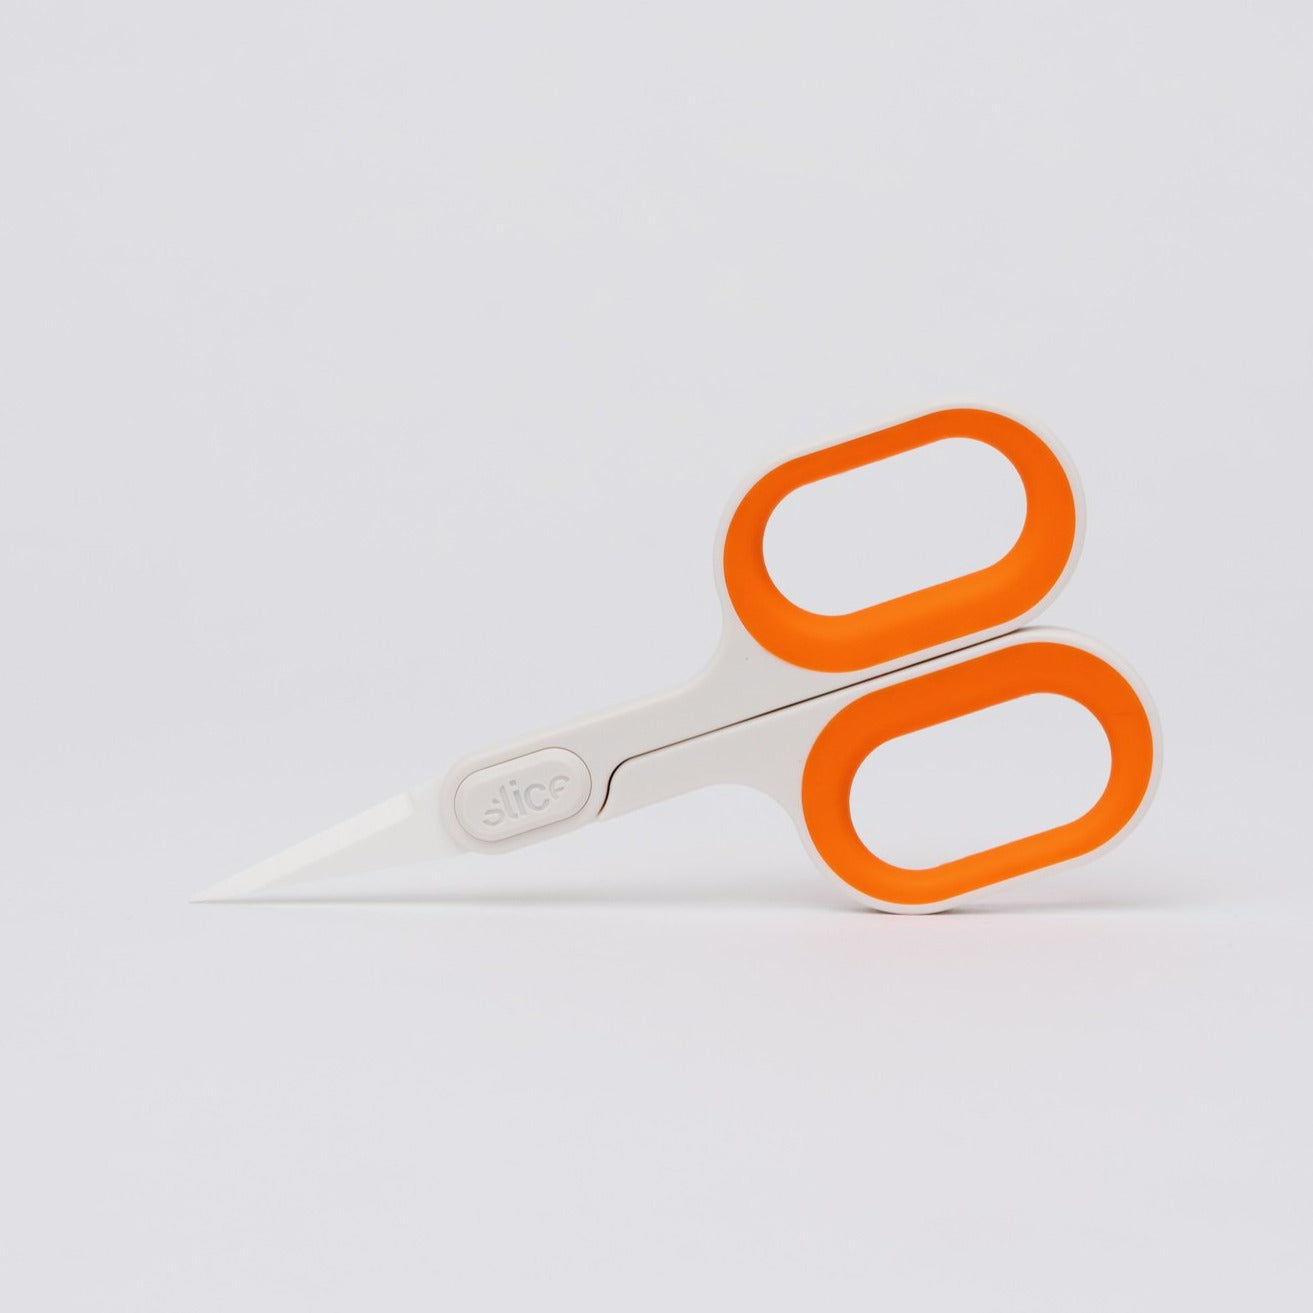 Slice Ceramic Scissors Pointed